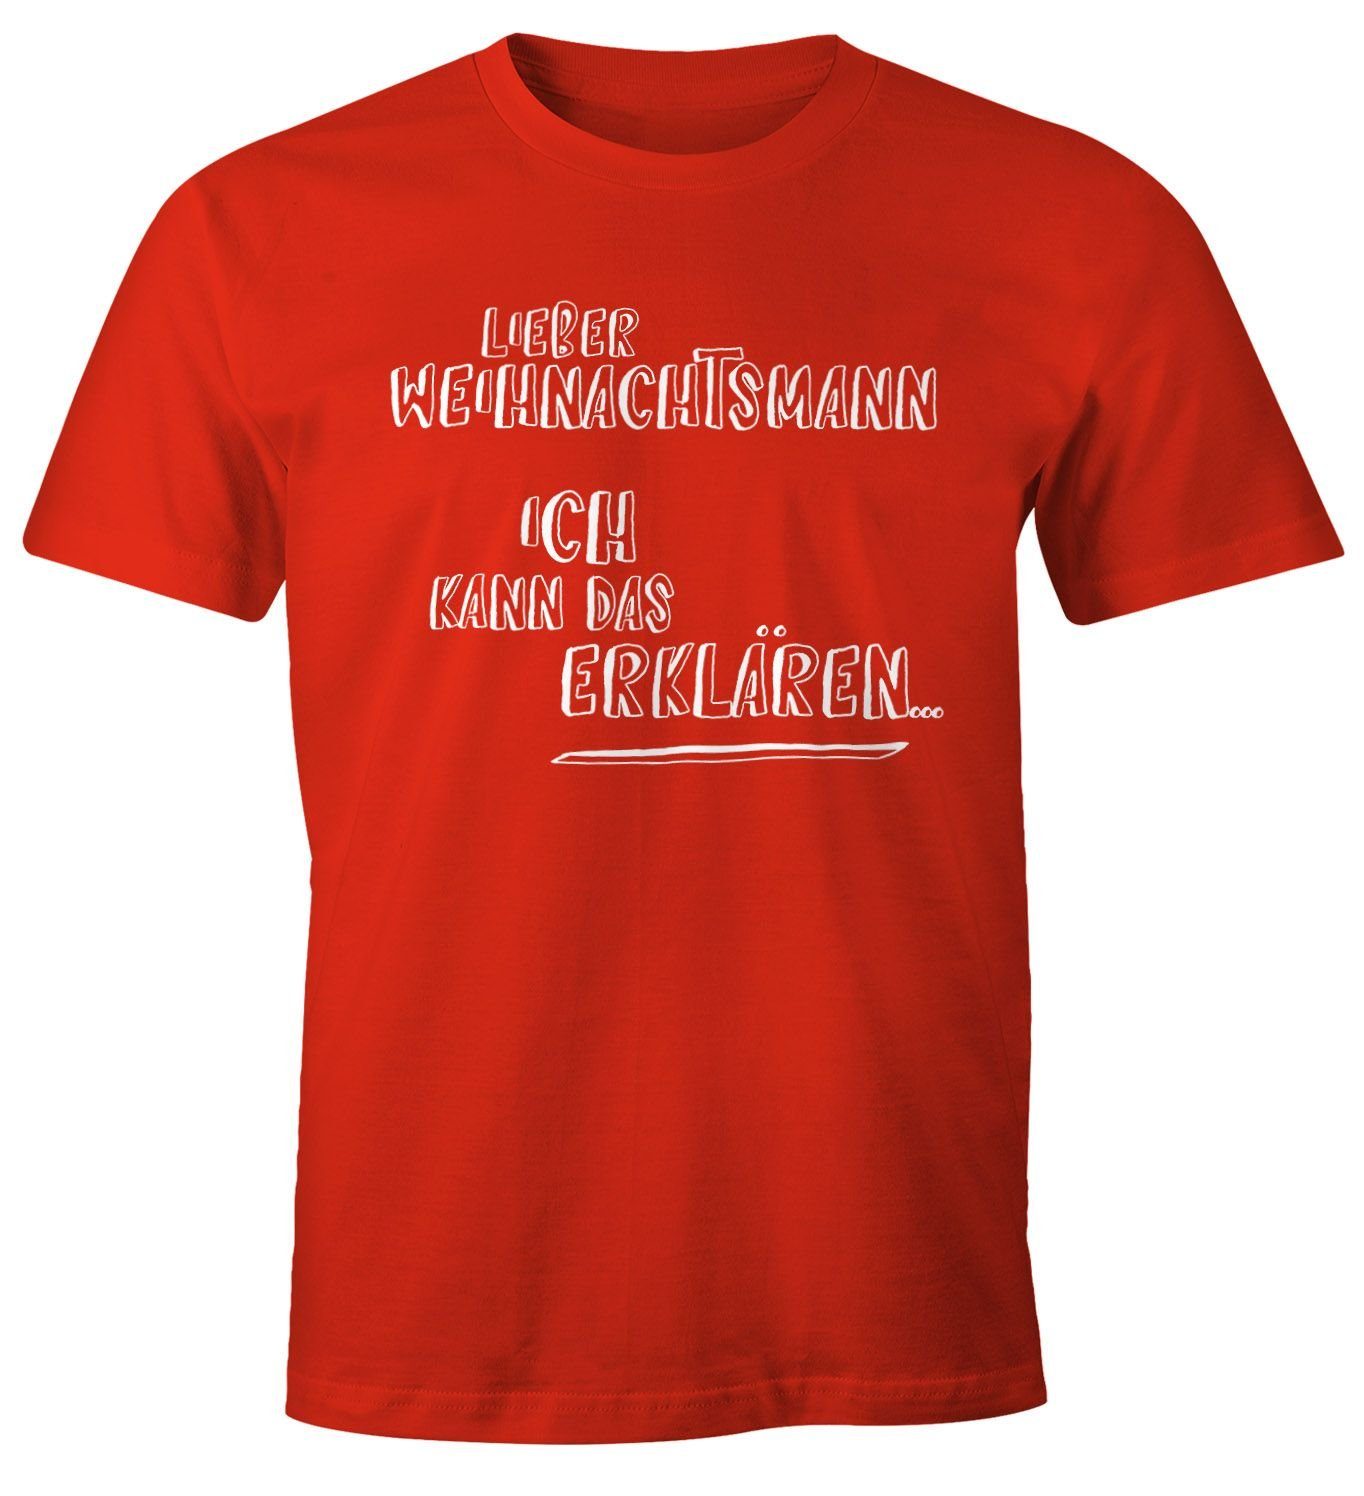 MoonWorks Print-Shirt Herren T-Shirt Weihnachten Lieber Weihnachtsmann Ich kann das erklären lustiges Weihnachtsshirt Moonworks® mit Print rot